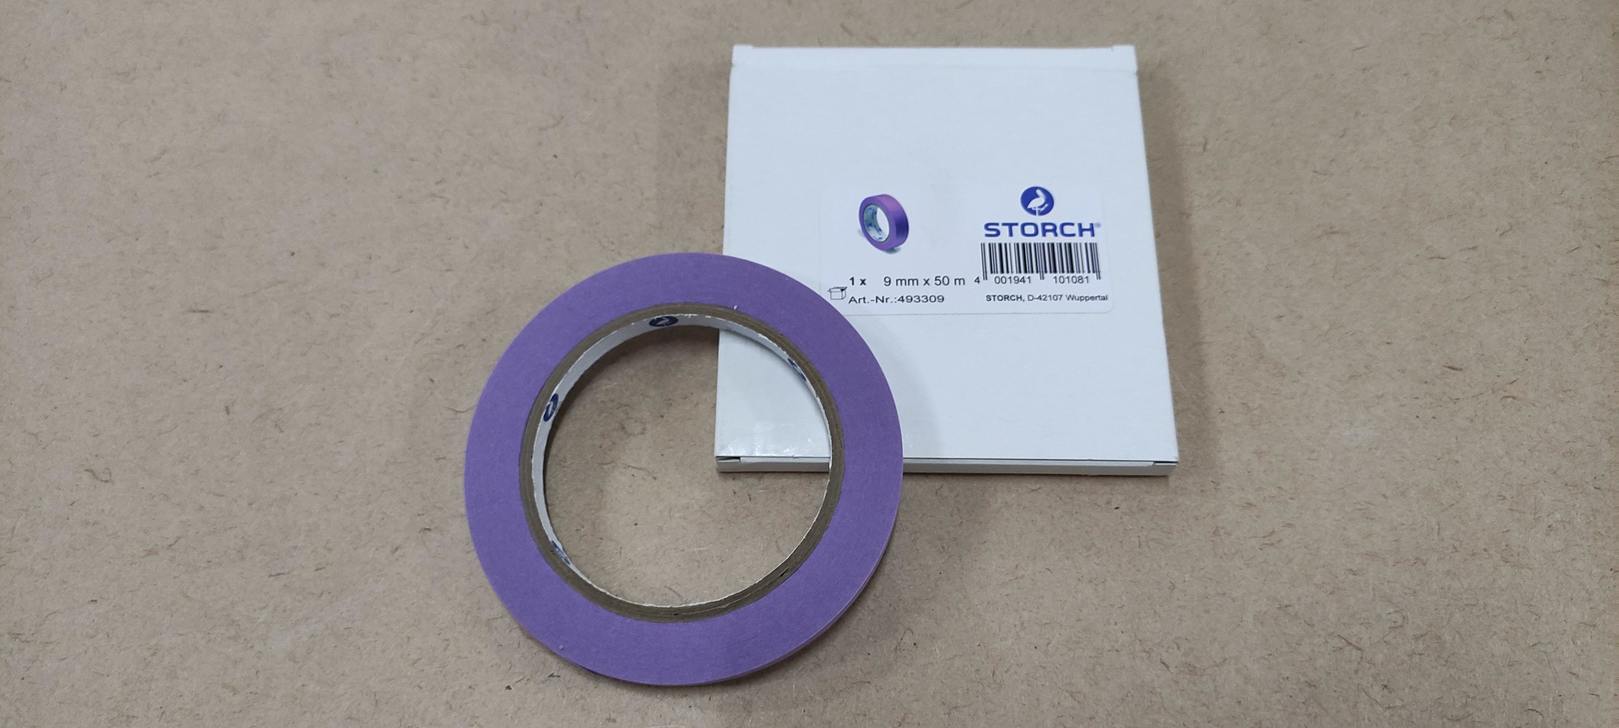 Лента малярная бумажная экстратонкая (0,085 мм) рисовая бумага фиолет 9 мм х 50 м STORCH (493309)